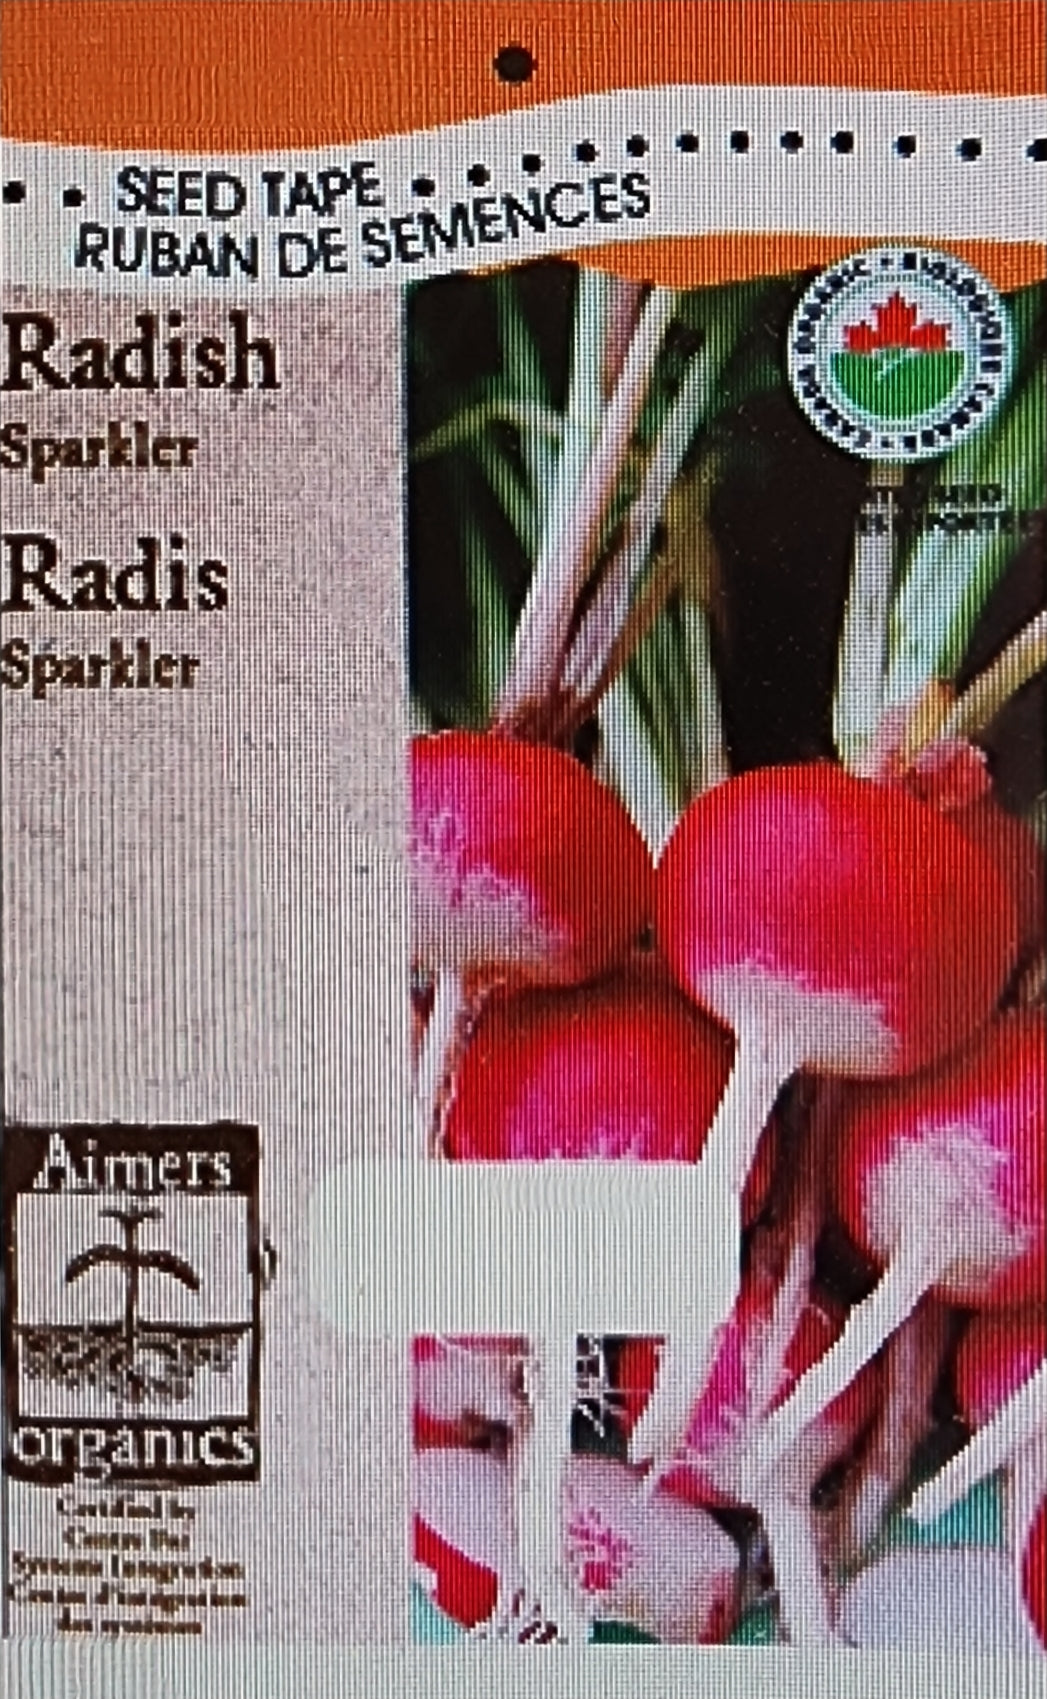 Organic Radish Sparkler - Aimers Seed Tape